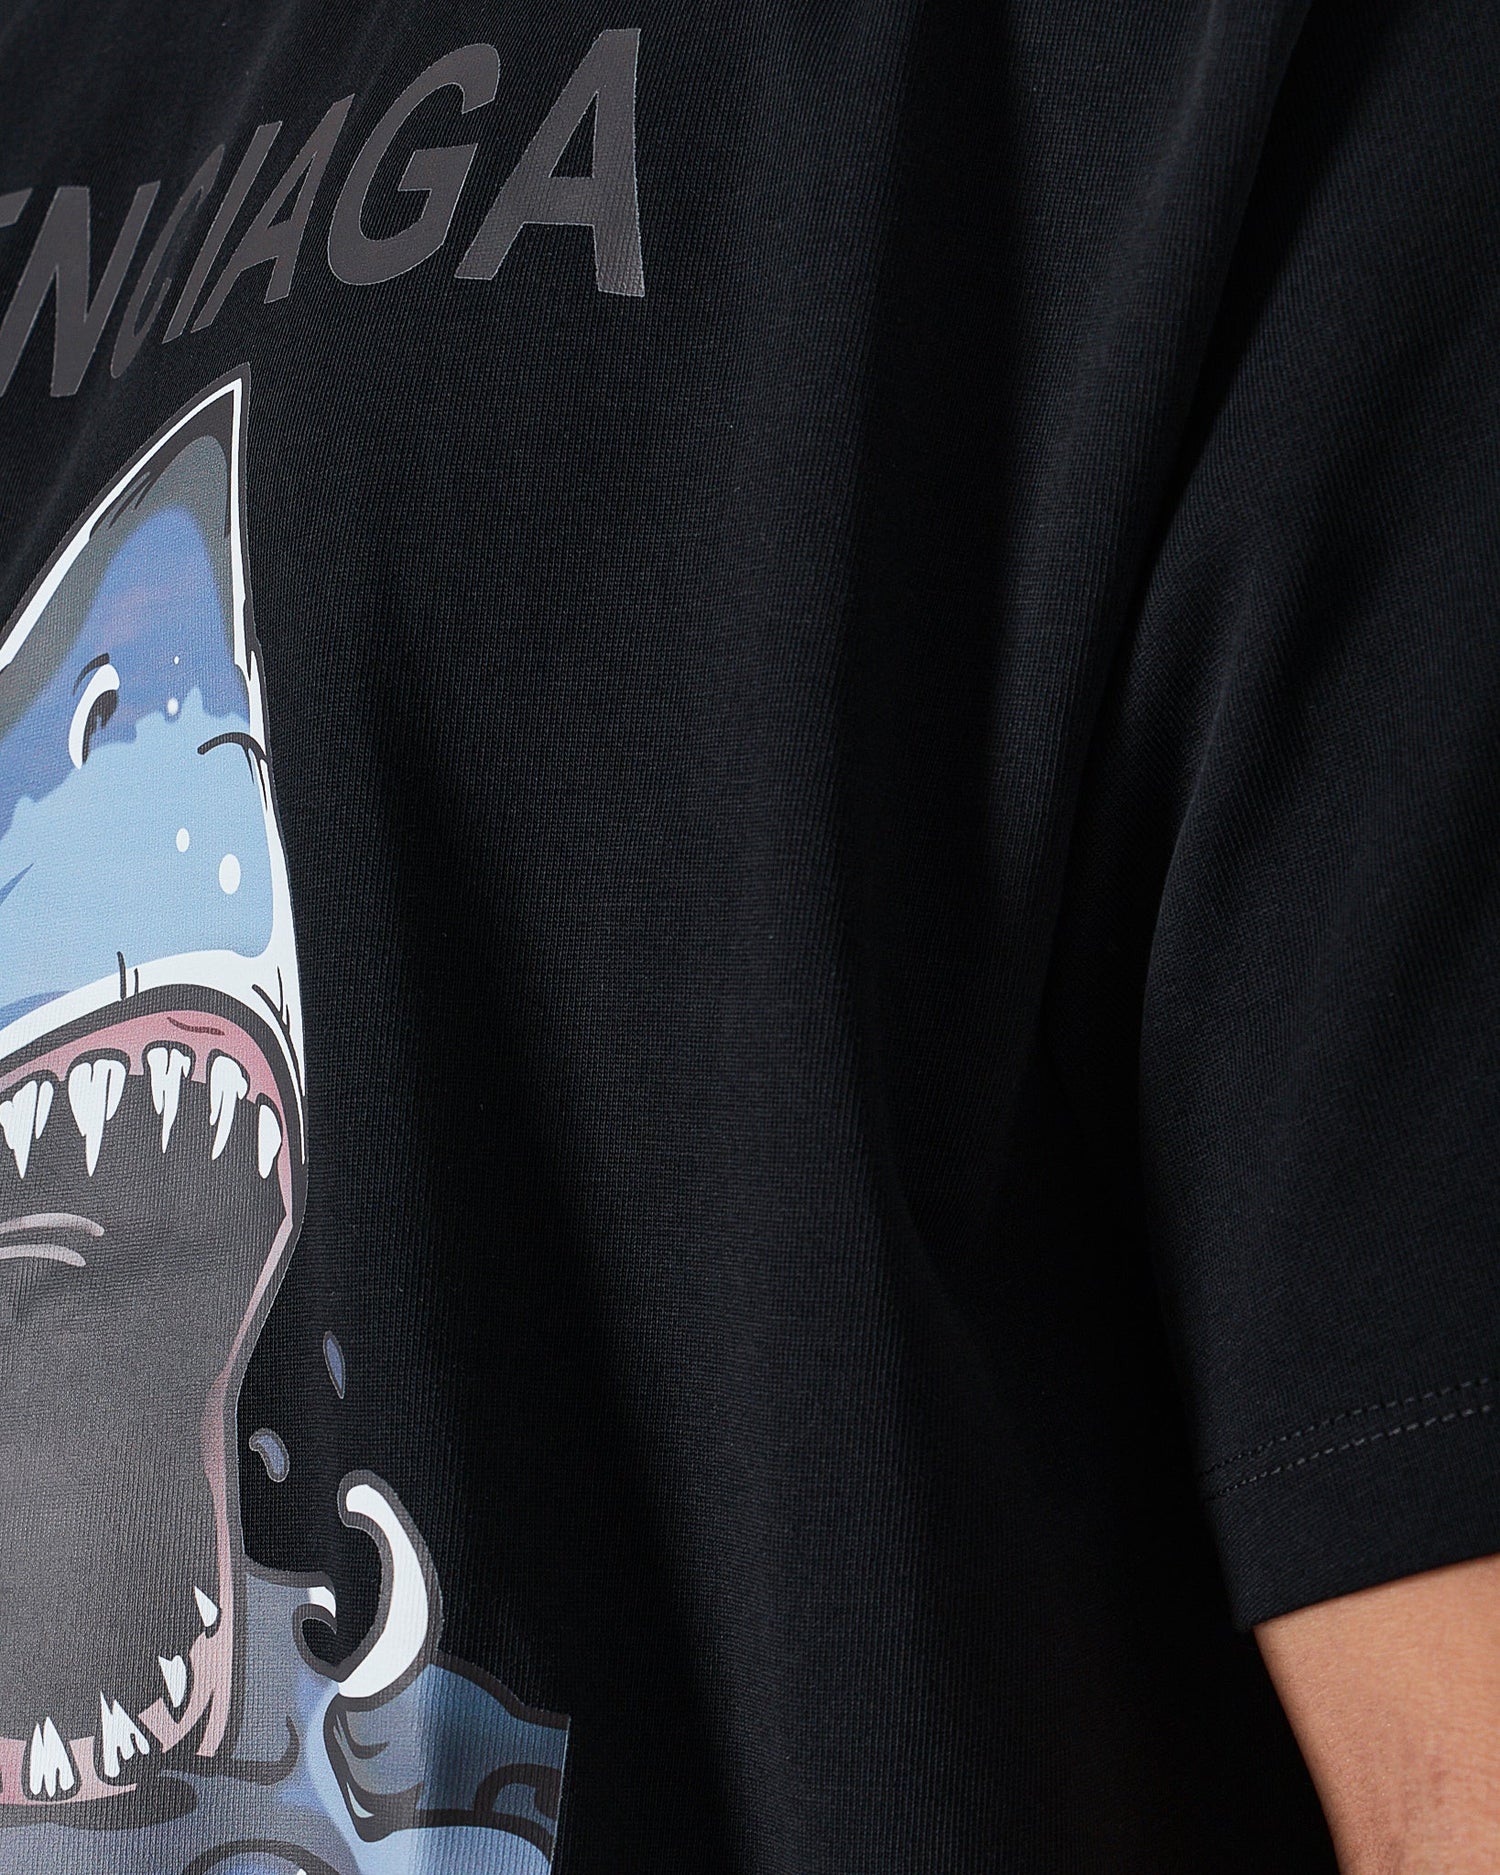 MOI OUTFIT-BAL Sharks Men Black T-Shirt 22.90